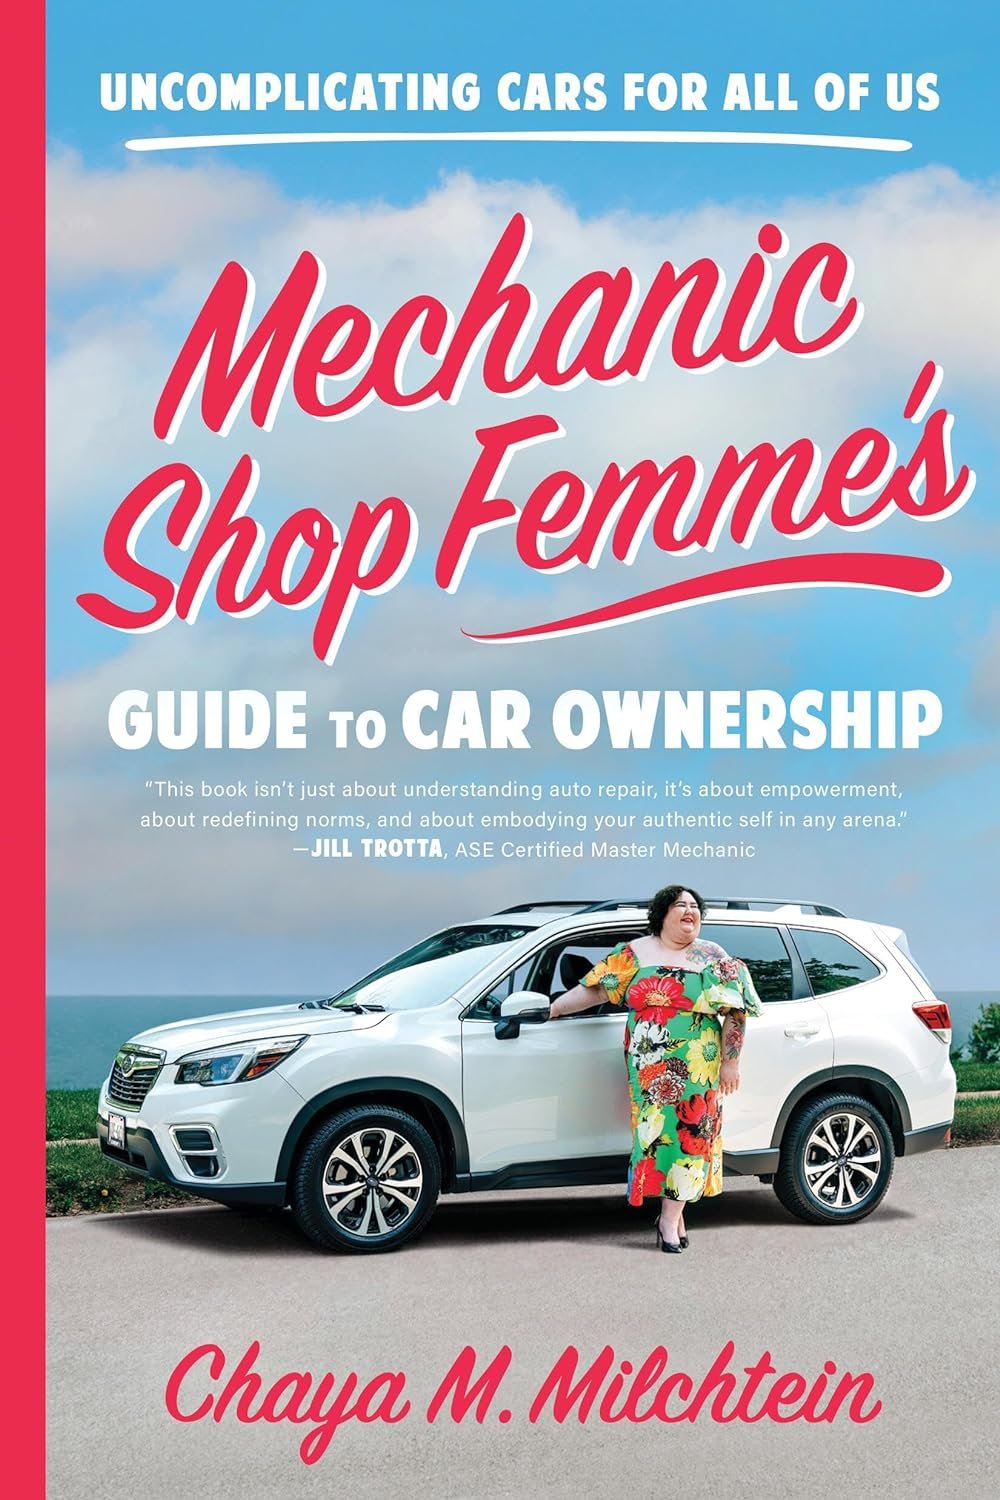 Mechanic Shop Femme’s Guide Review